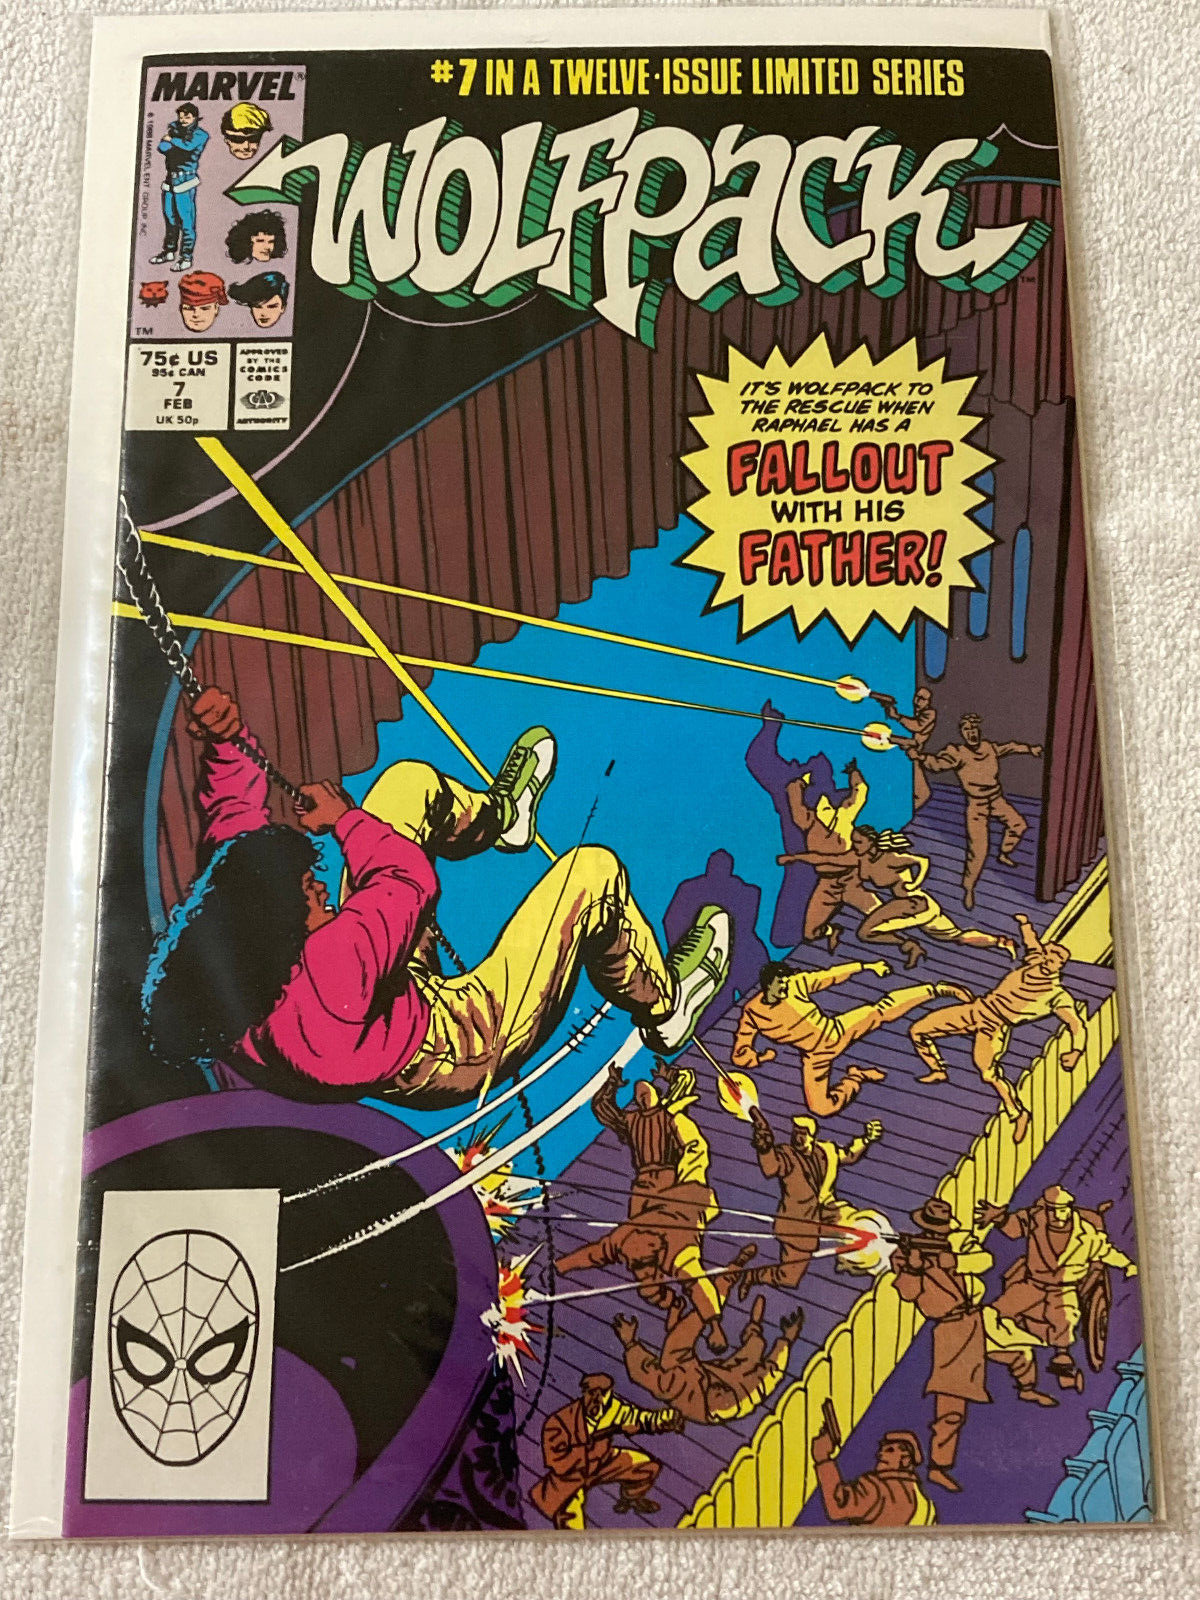 Wolfpack #7 (of 12) Ltd. Series Marvel Comics 1989 VF+/NM Figuero/Wilson/Ivy